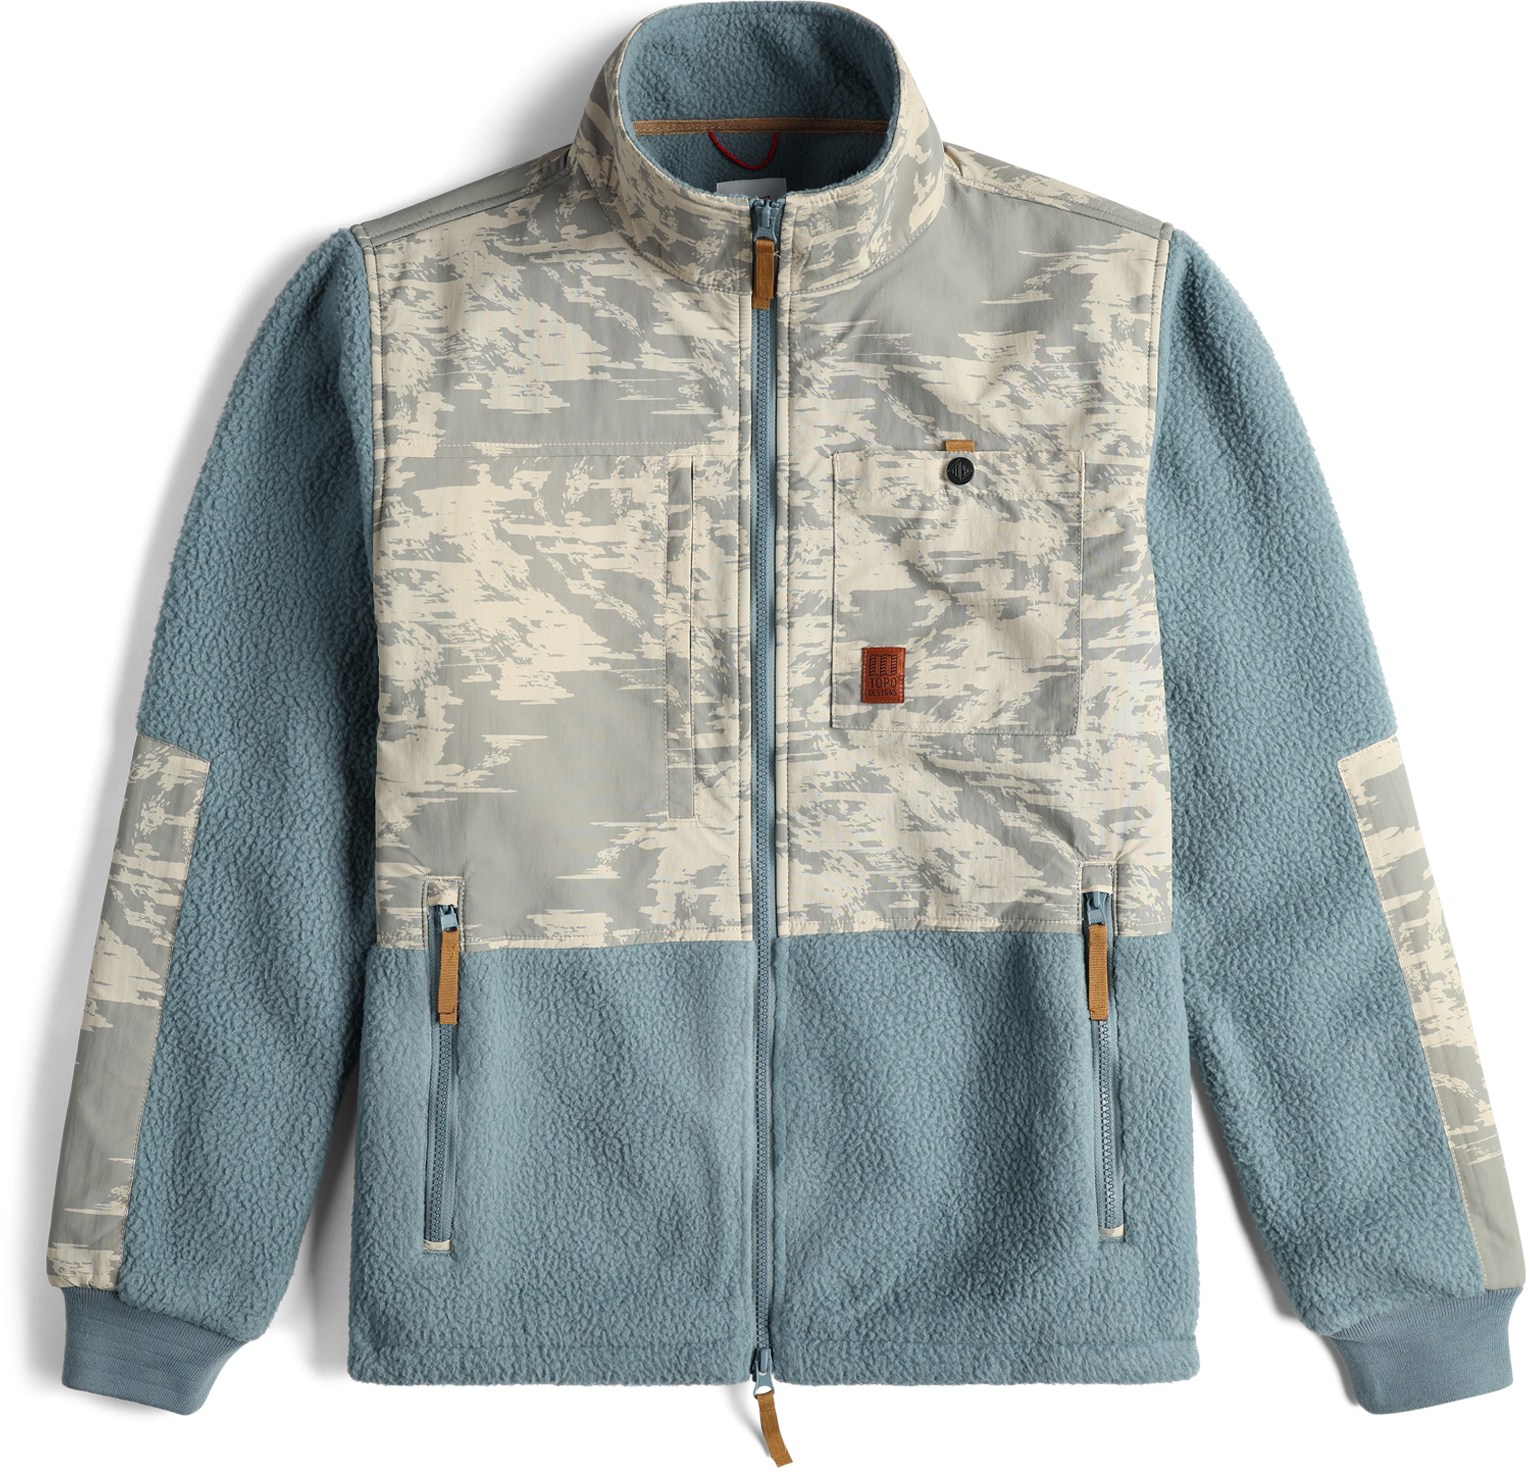 Флисовая куртка с субальпийским принтом — мужская Topo Designs, хаки